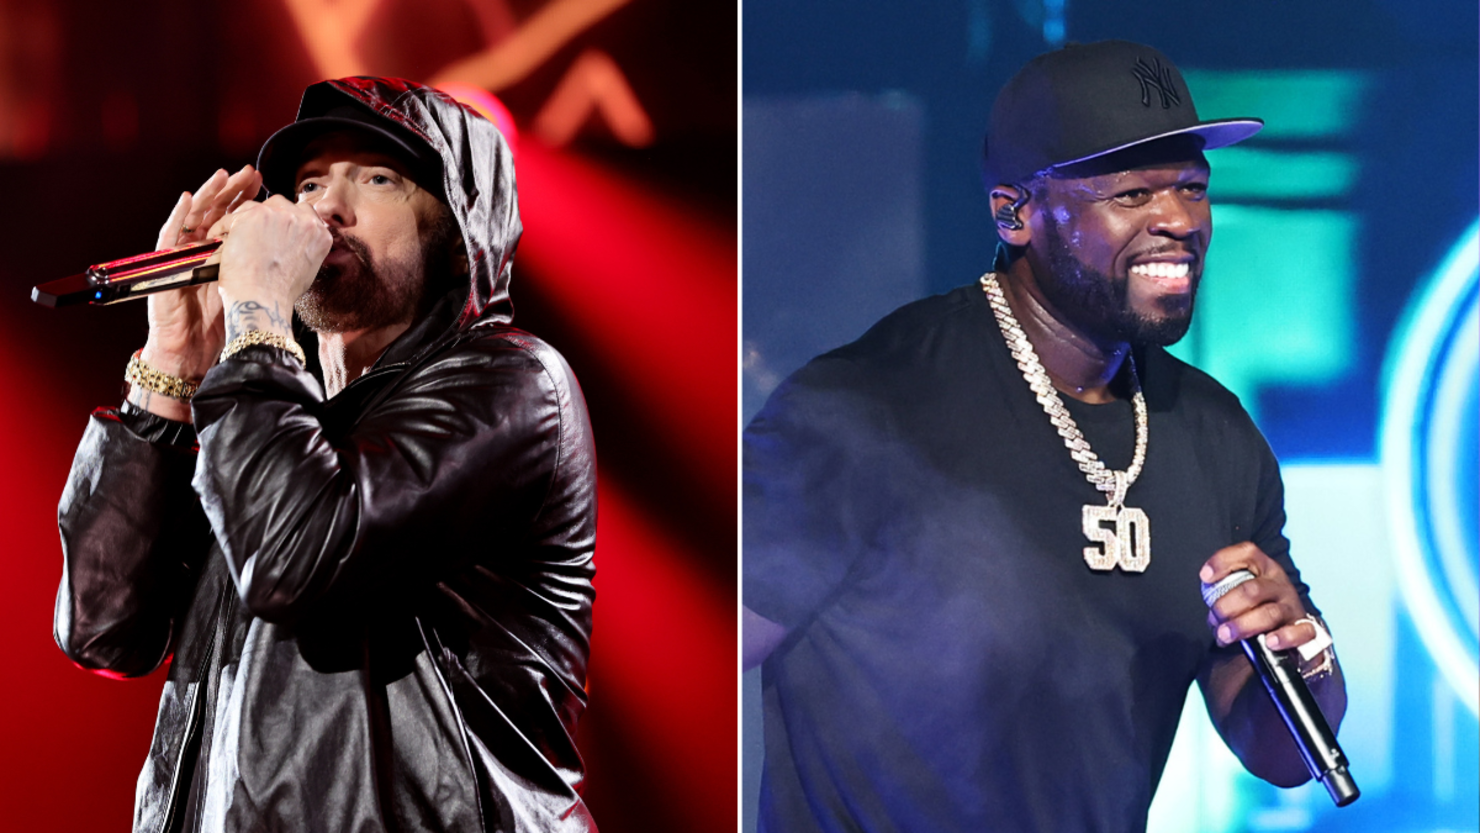 Eminem & 50 Cent